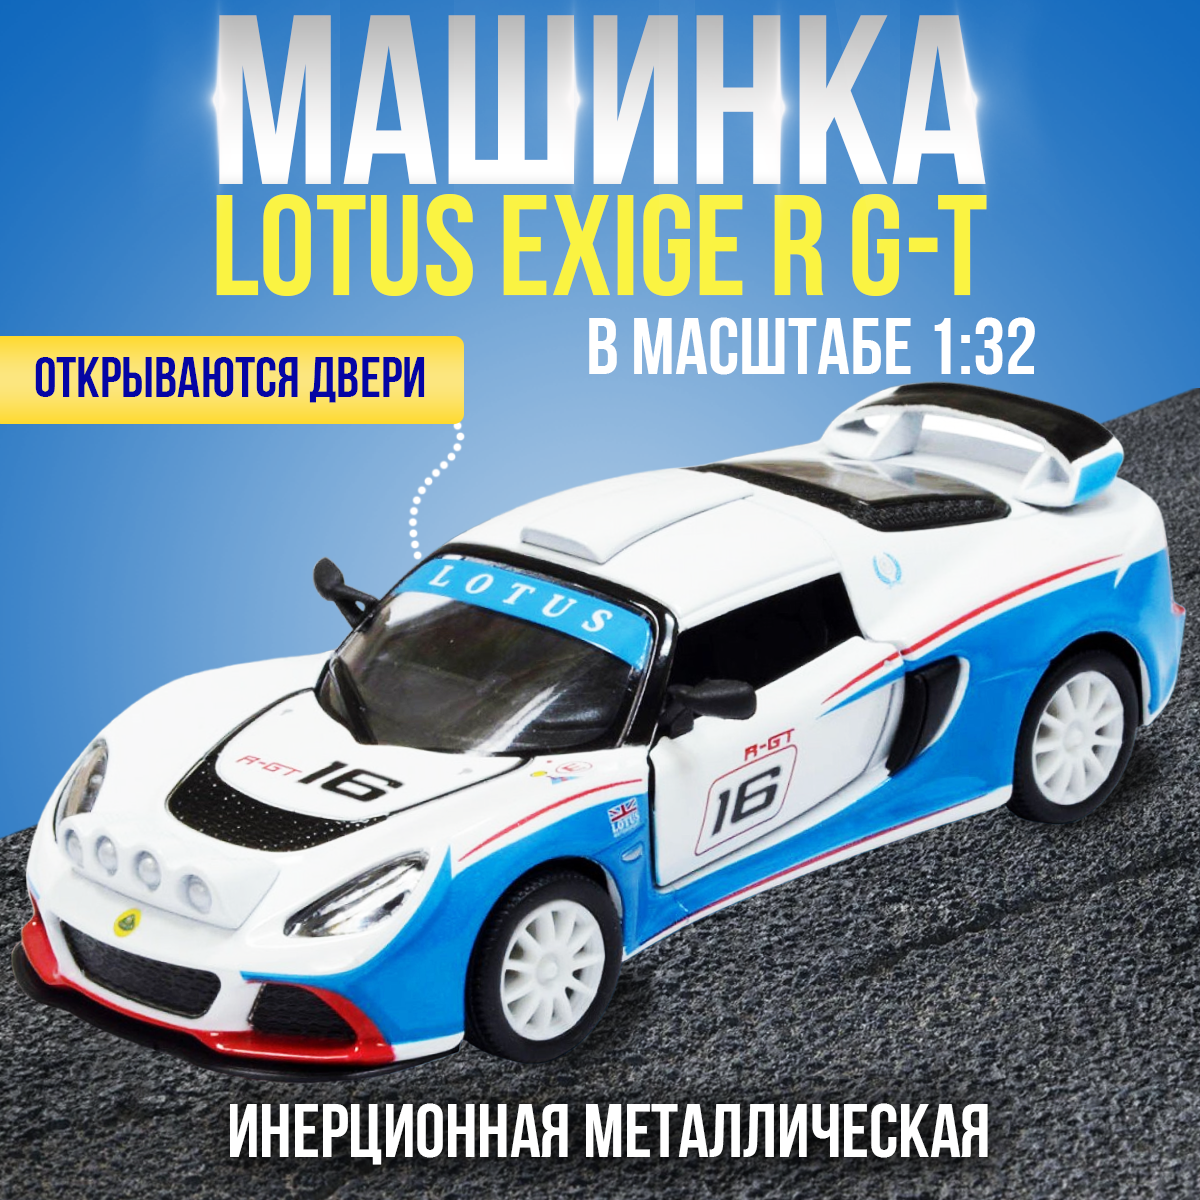 Металлическая машинка игрушка 1:32 2012 Lotus Exige R-GT (Лотус Эксидж) 12.5.см. инерционная / Белая